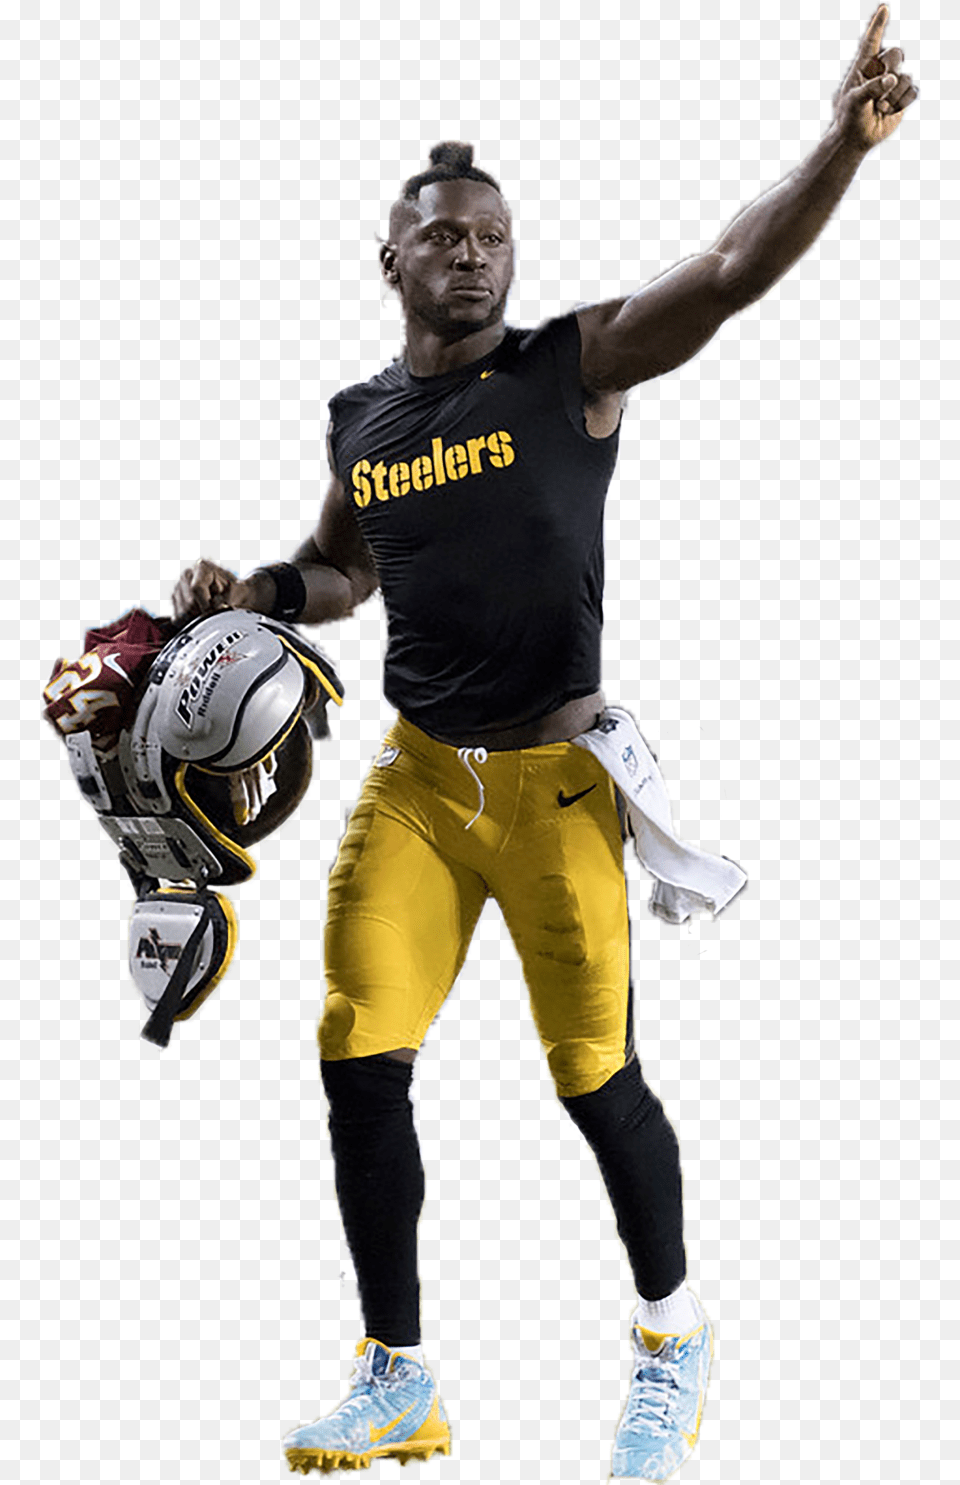 Pittsburgh Steelers, Shoe, Clothing, Footwear, Helmet Png Image